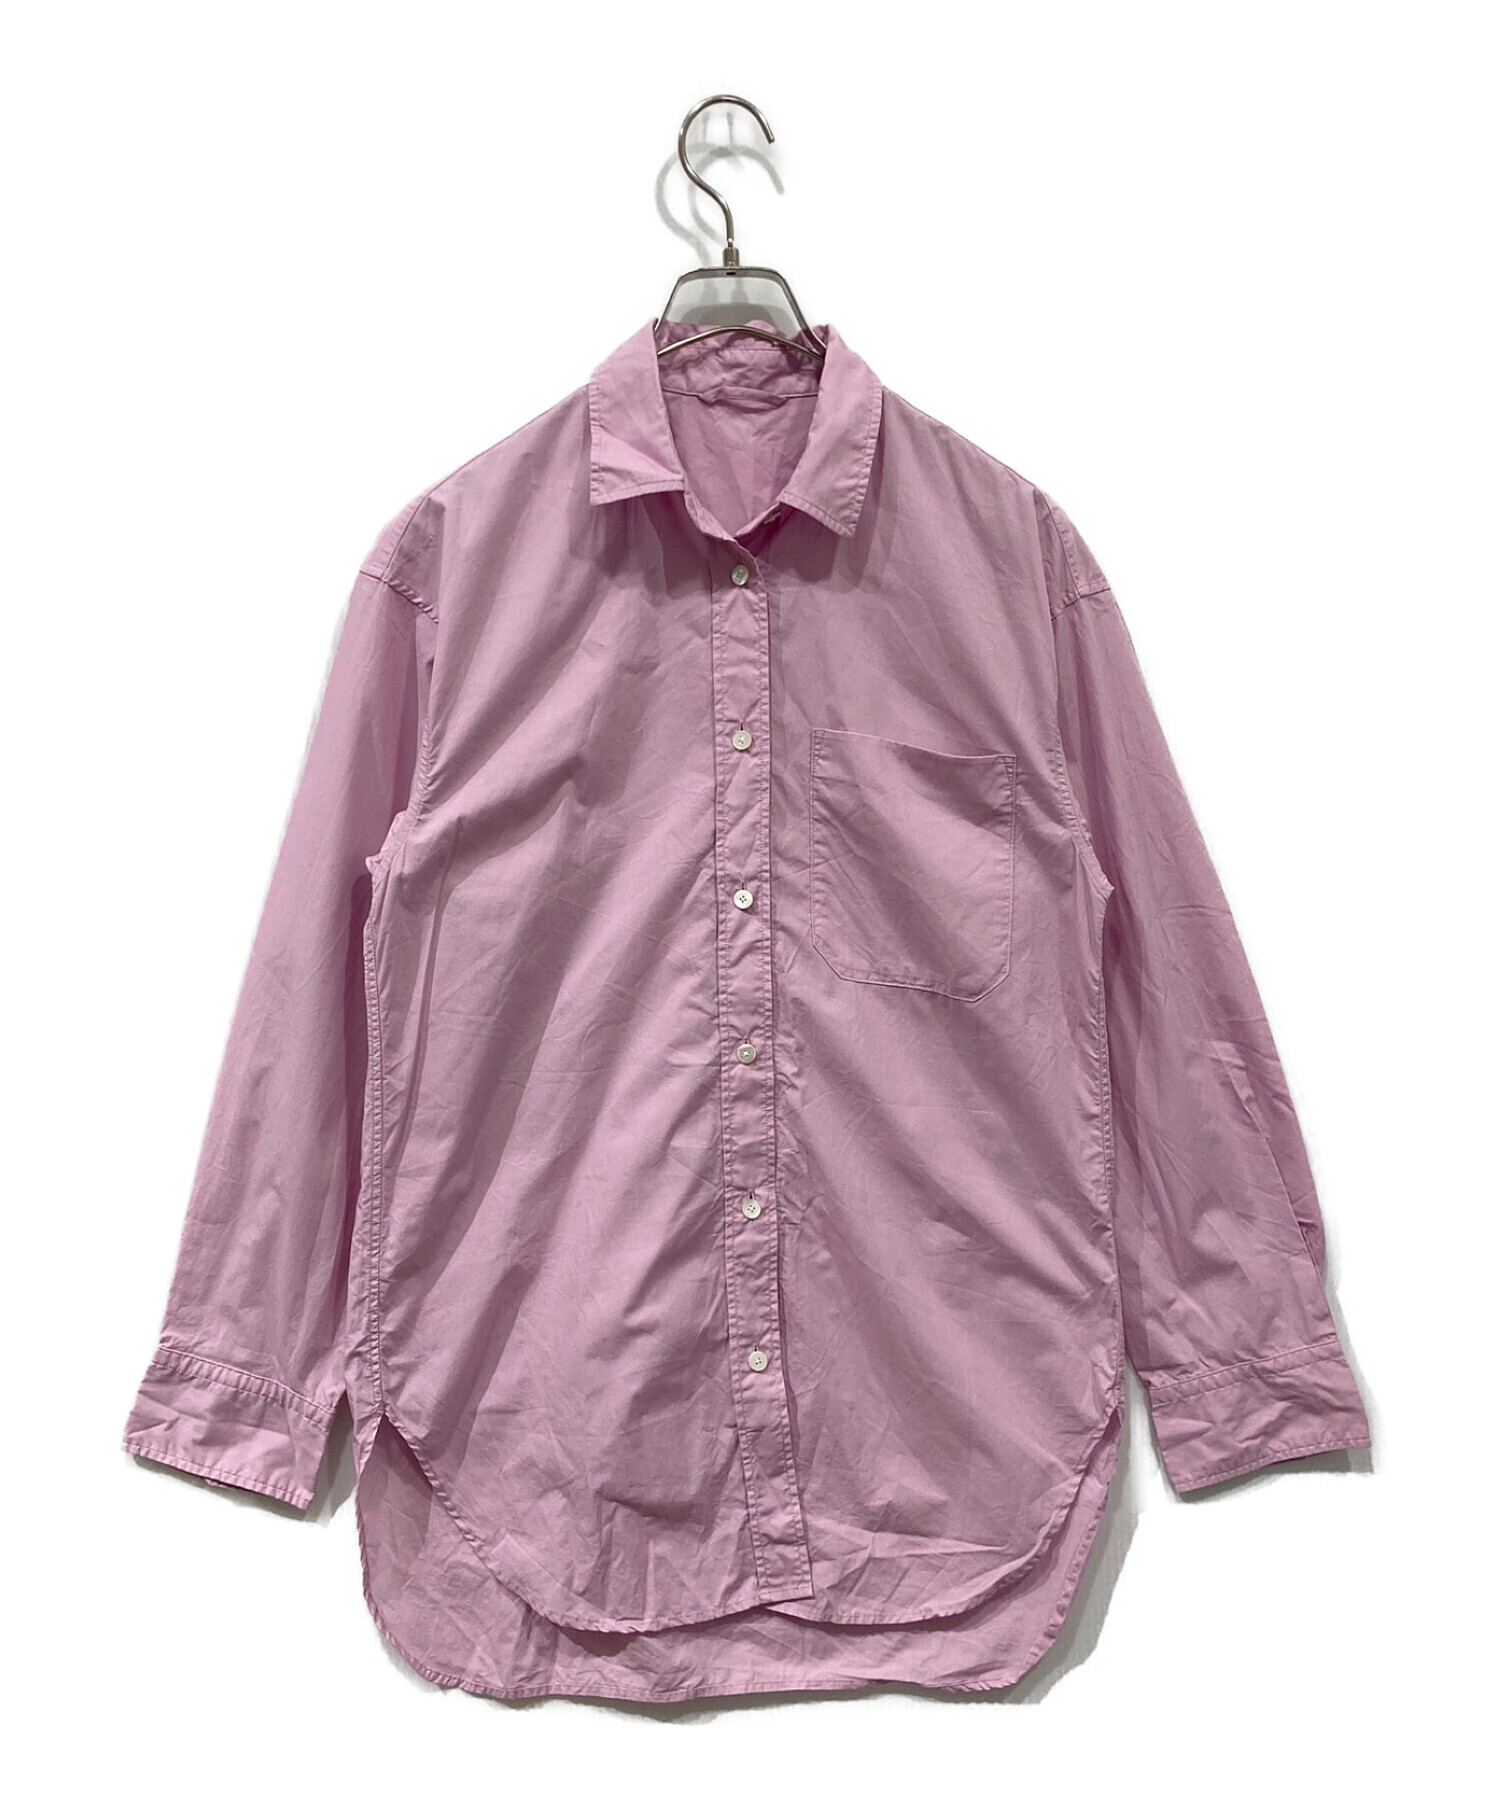 Spick and Span (スピックアンドスパン) コットンタイプライターシャツ ピンク サイズ:FREE